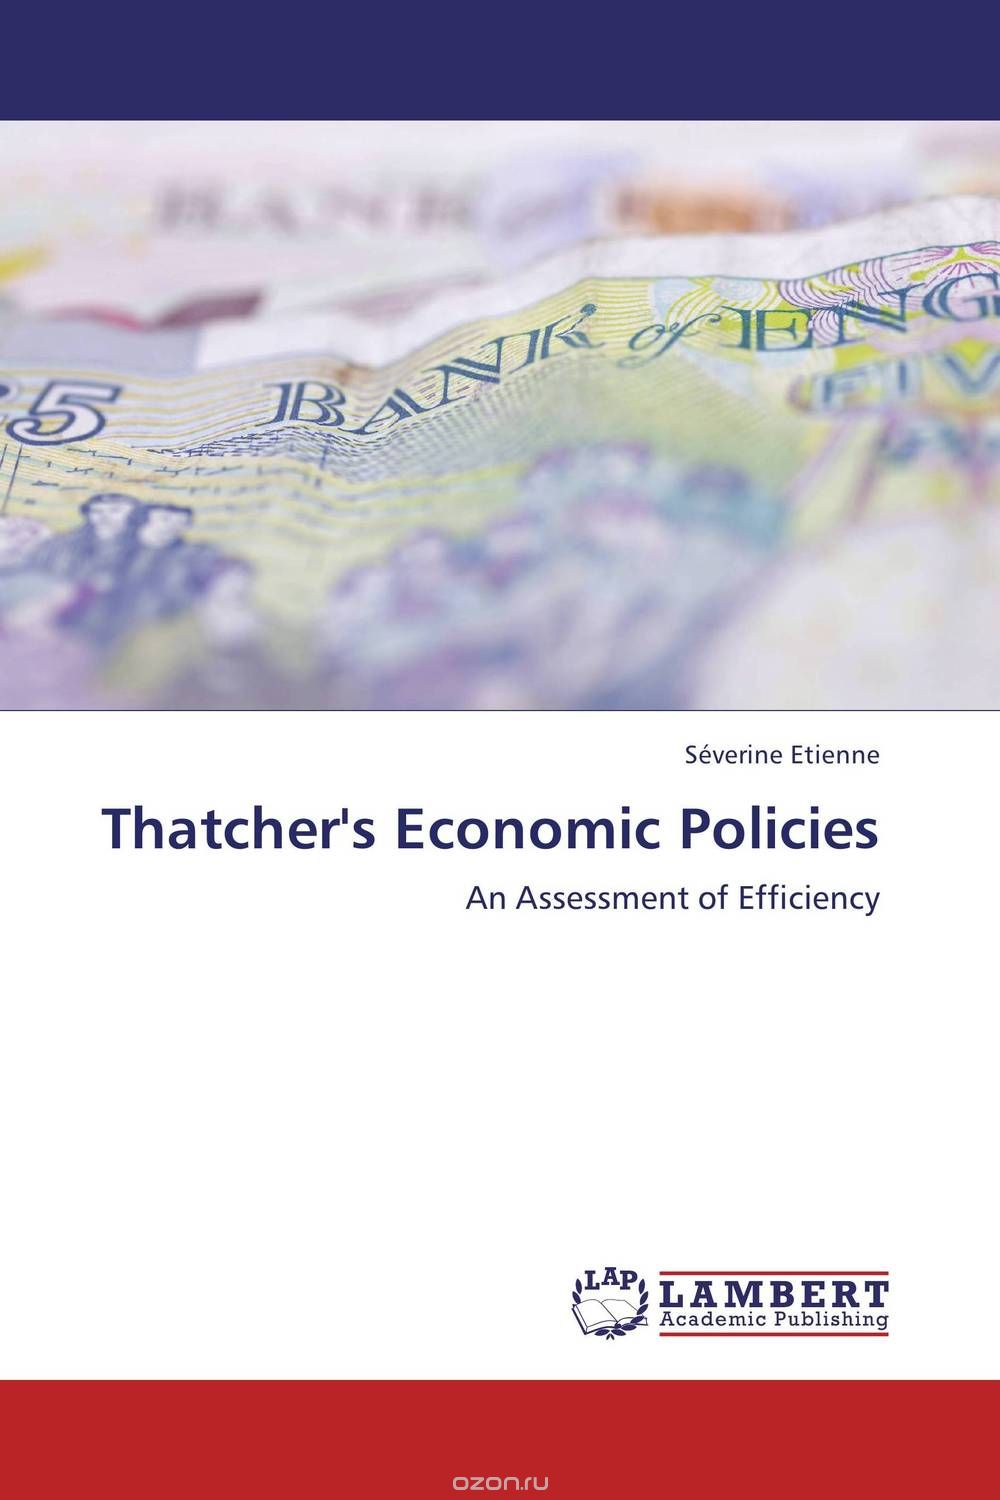 Скачать книгу "Thatcher's Economic Policies"